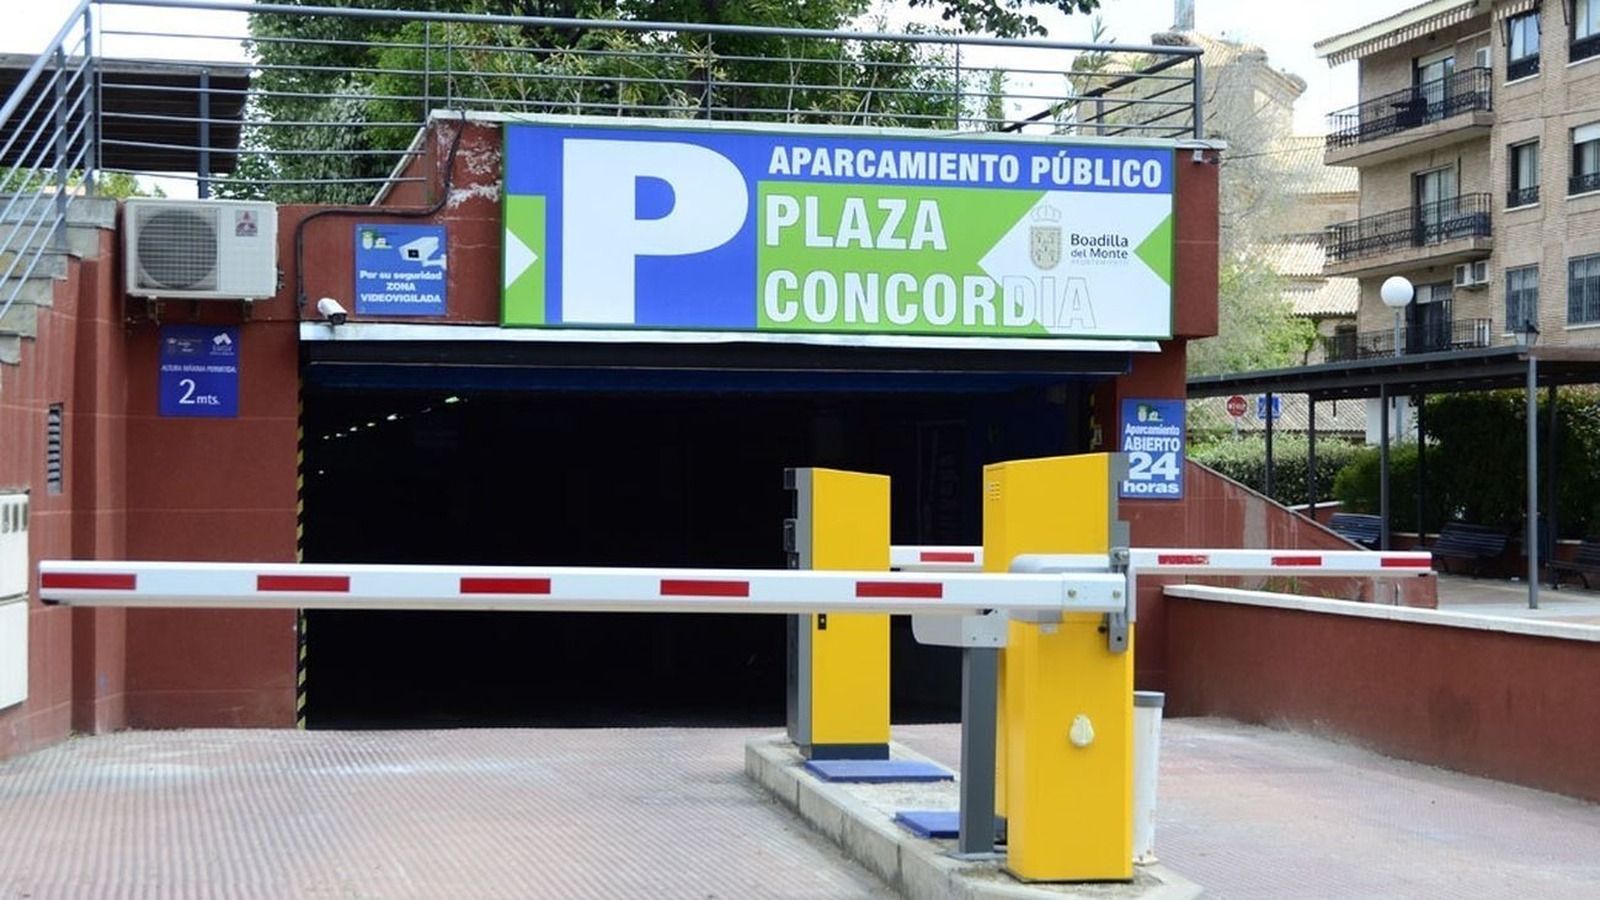 El aparcamiento público de la Plaza de la Concordia de Boadilla será gratuito hasta final de año en horario comercial   